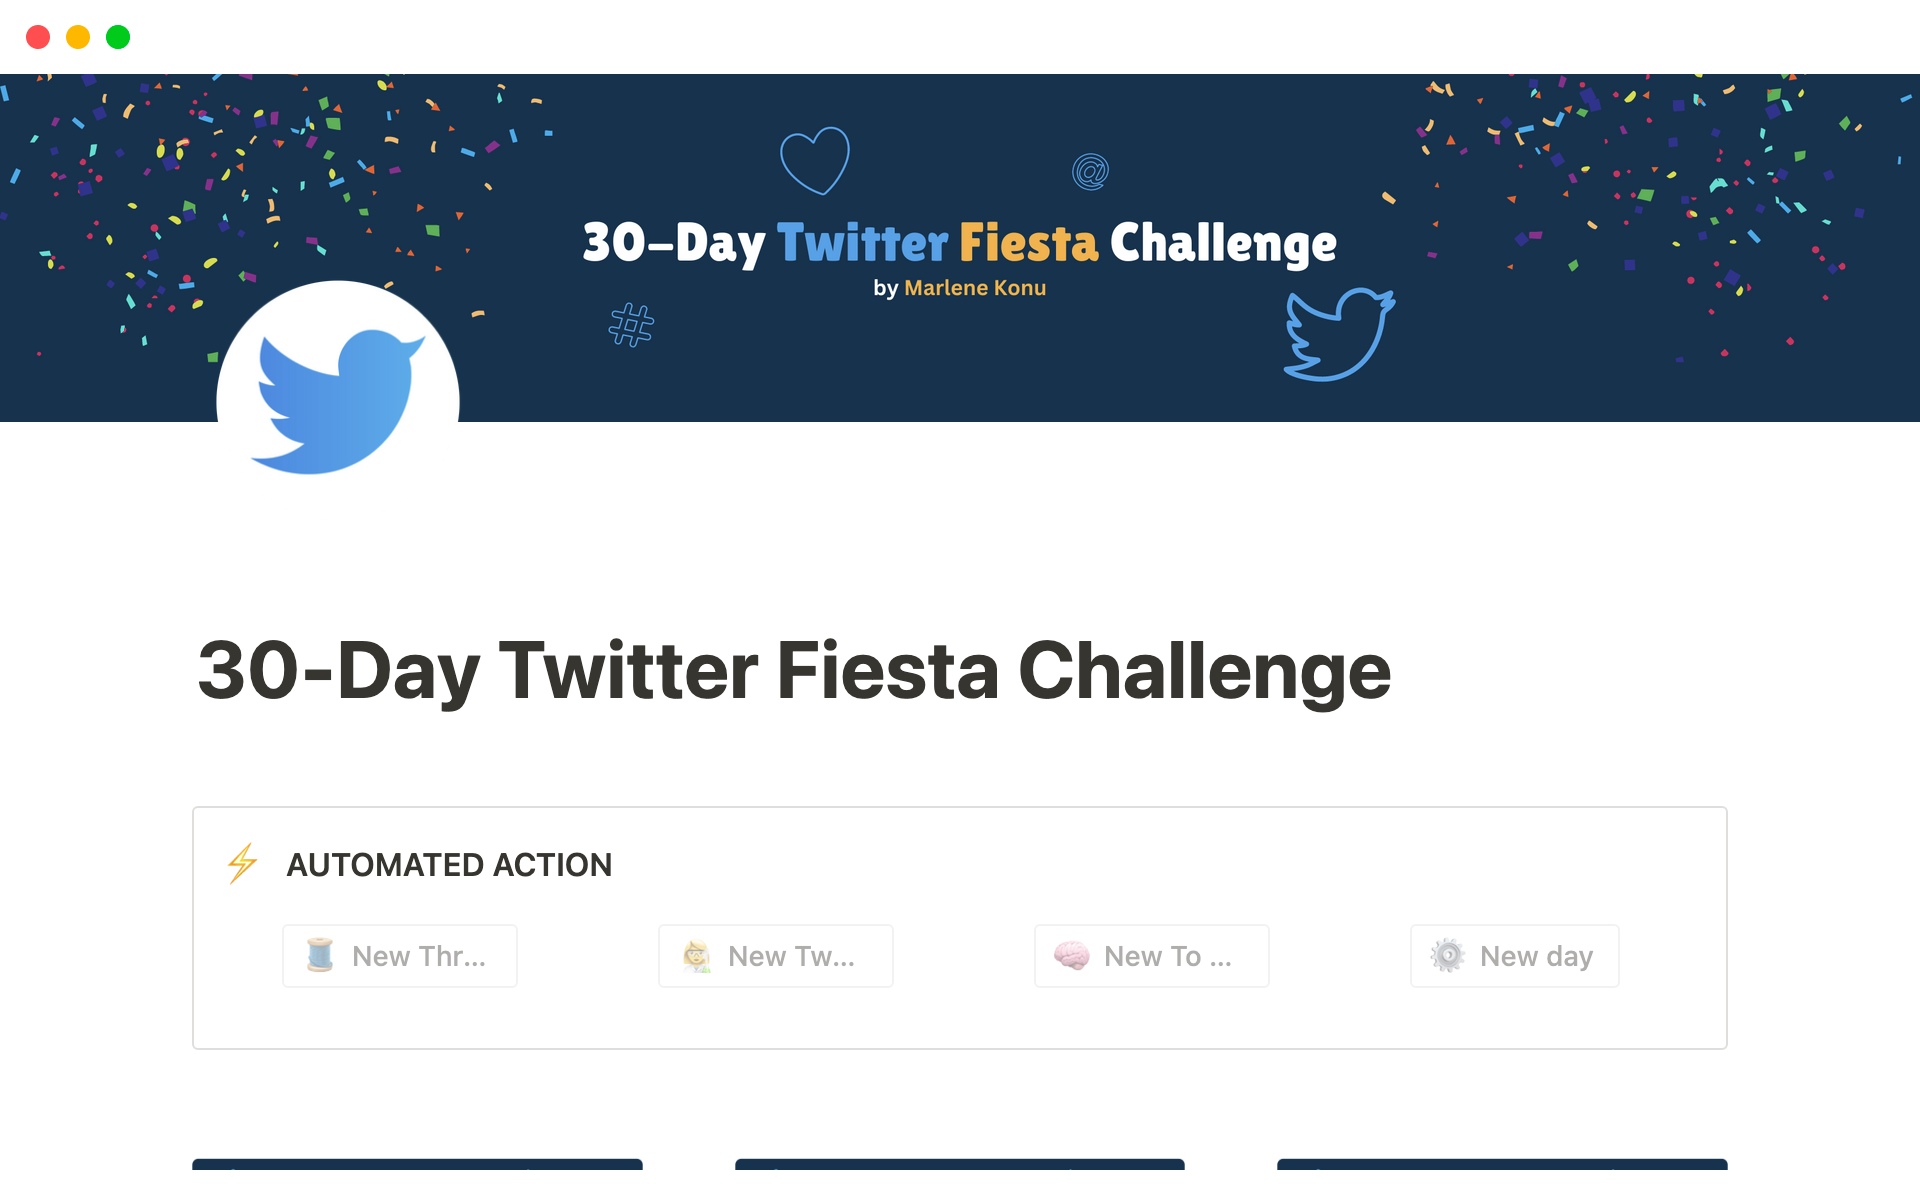 Uma prévia do modelo para 30-Day Twitter Fiesta Challenge